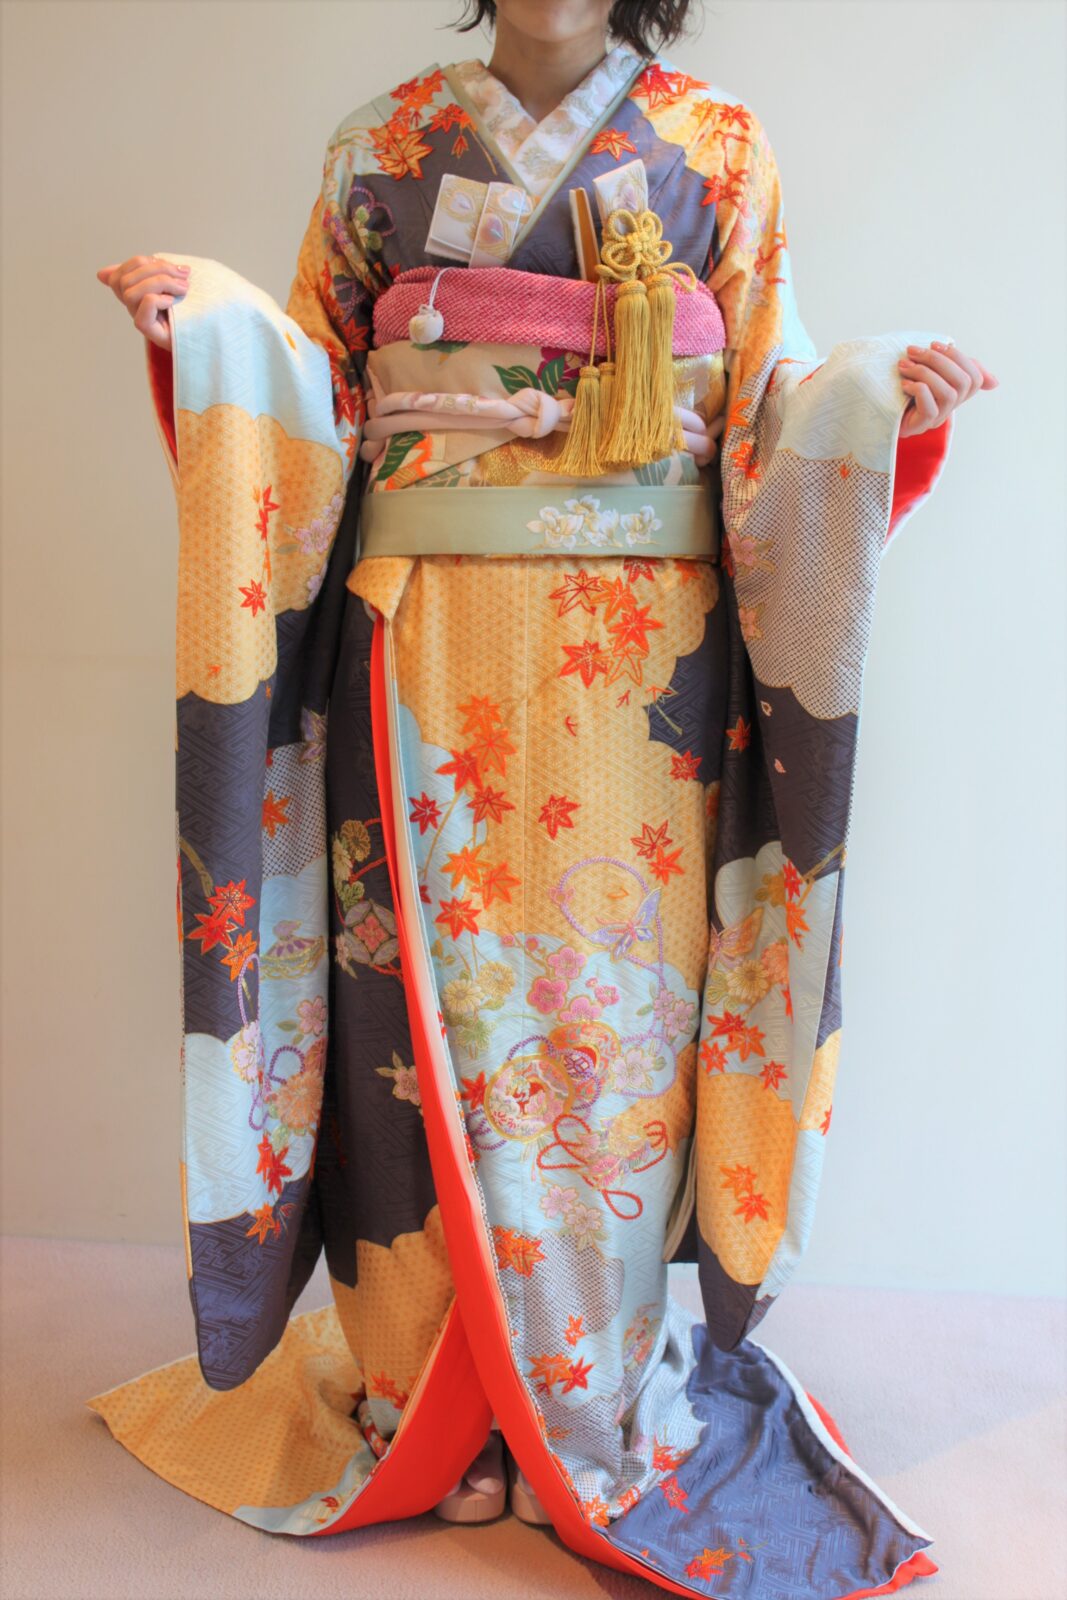 東京の人気結婚式会場、ザソウドウ東山京都での結婚式を予定されている花嫁様におすすめの本振袖は、存在感を放つ立体的なオレンジの相良刺繍がポイントで華やかに引き立てます